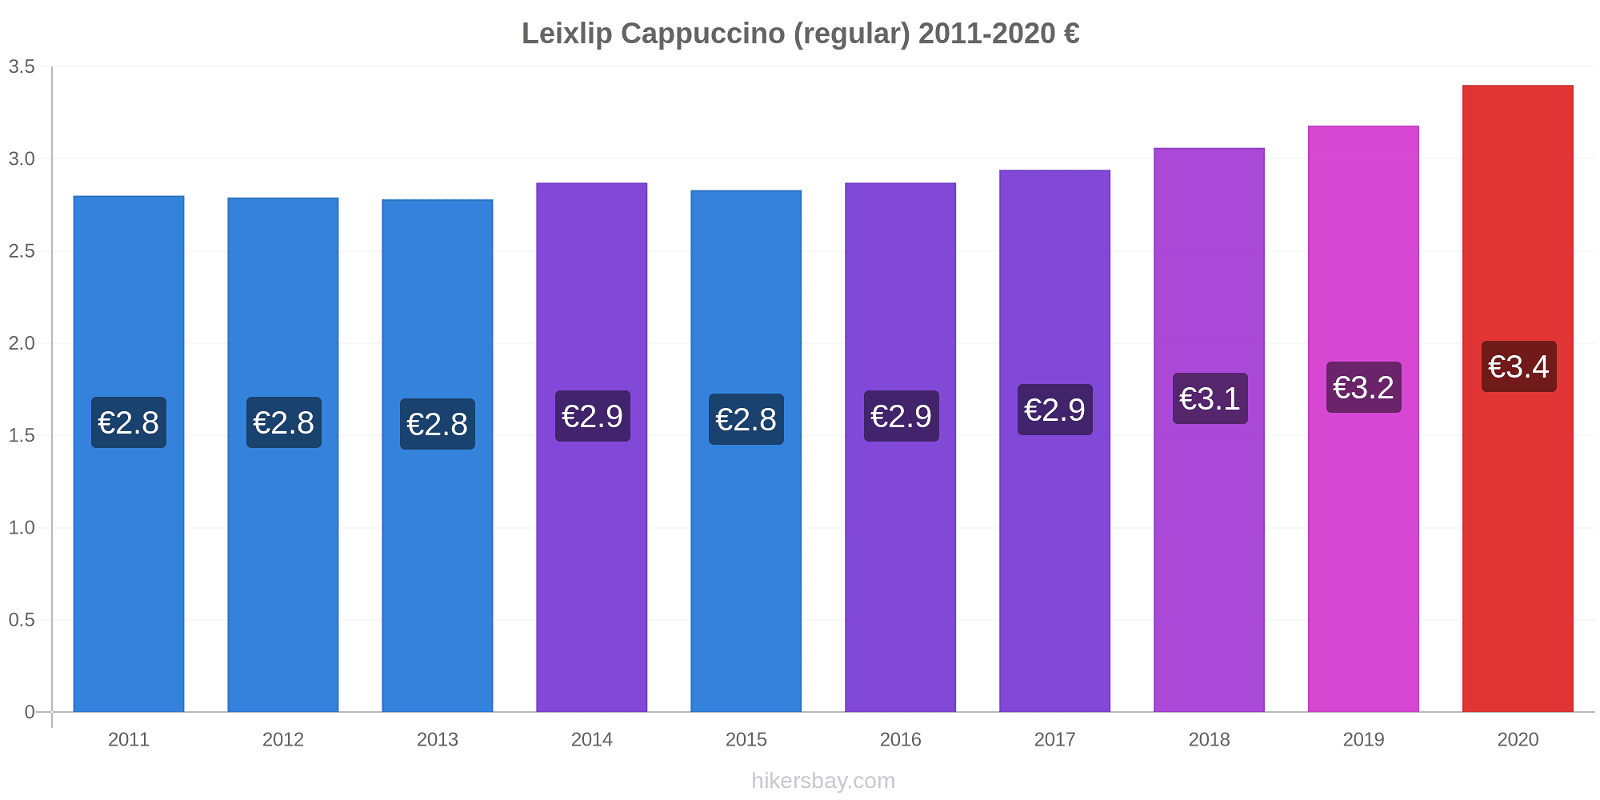 Leixlip price changes Cappuccino (regular) hikersbay.com